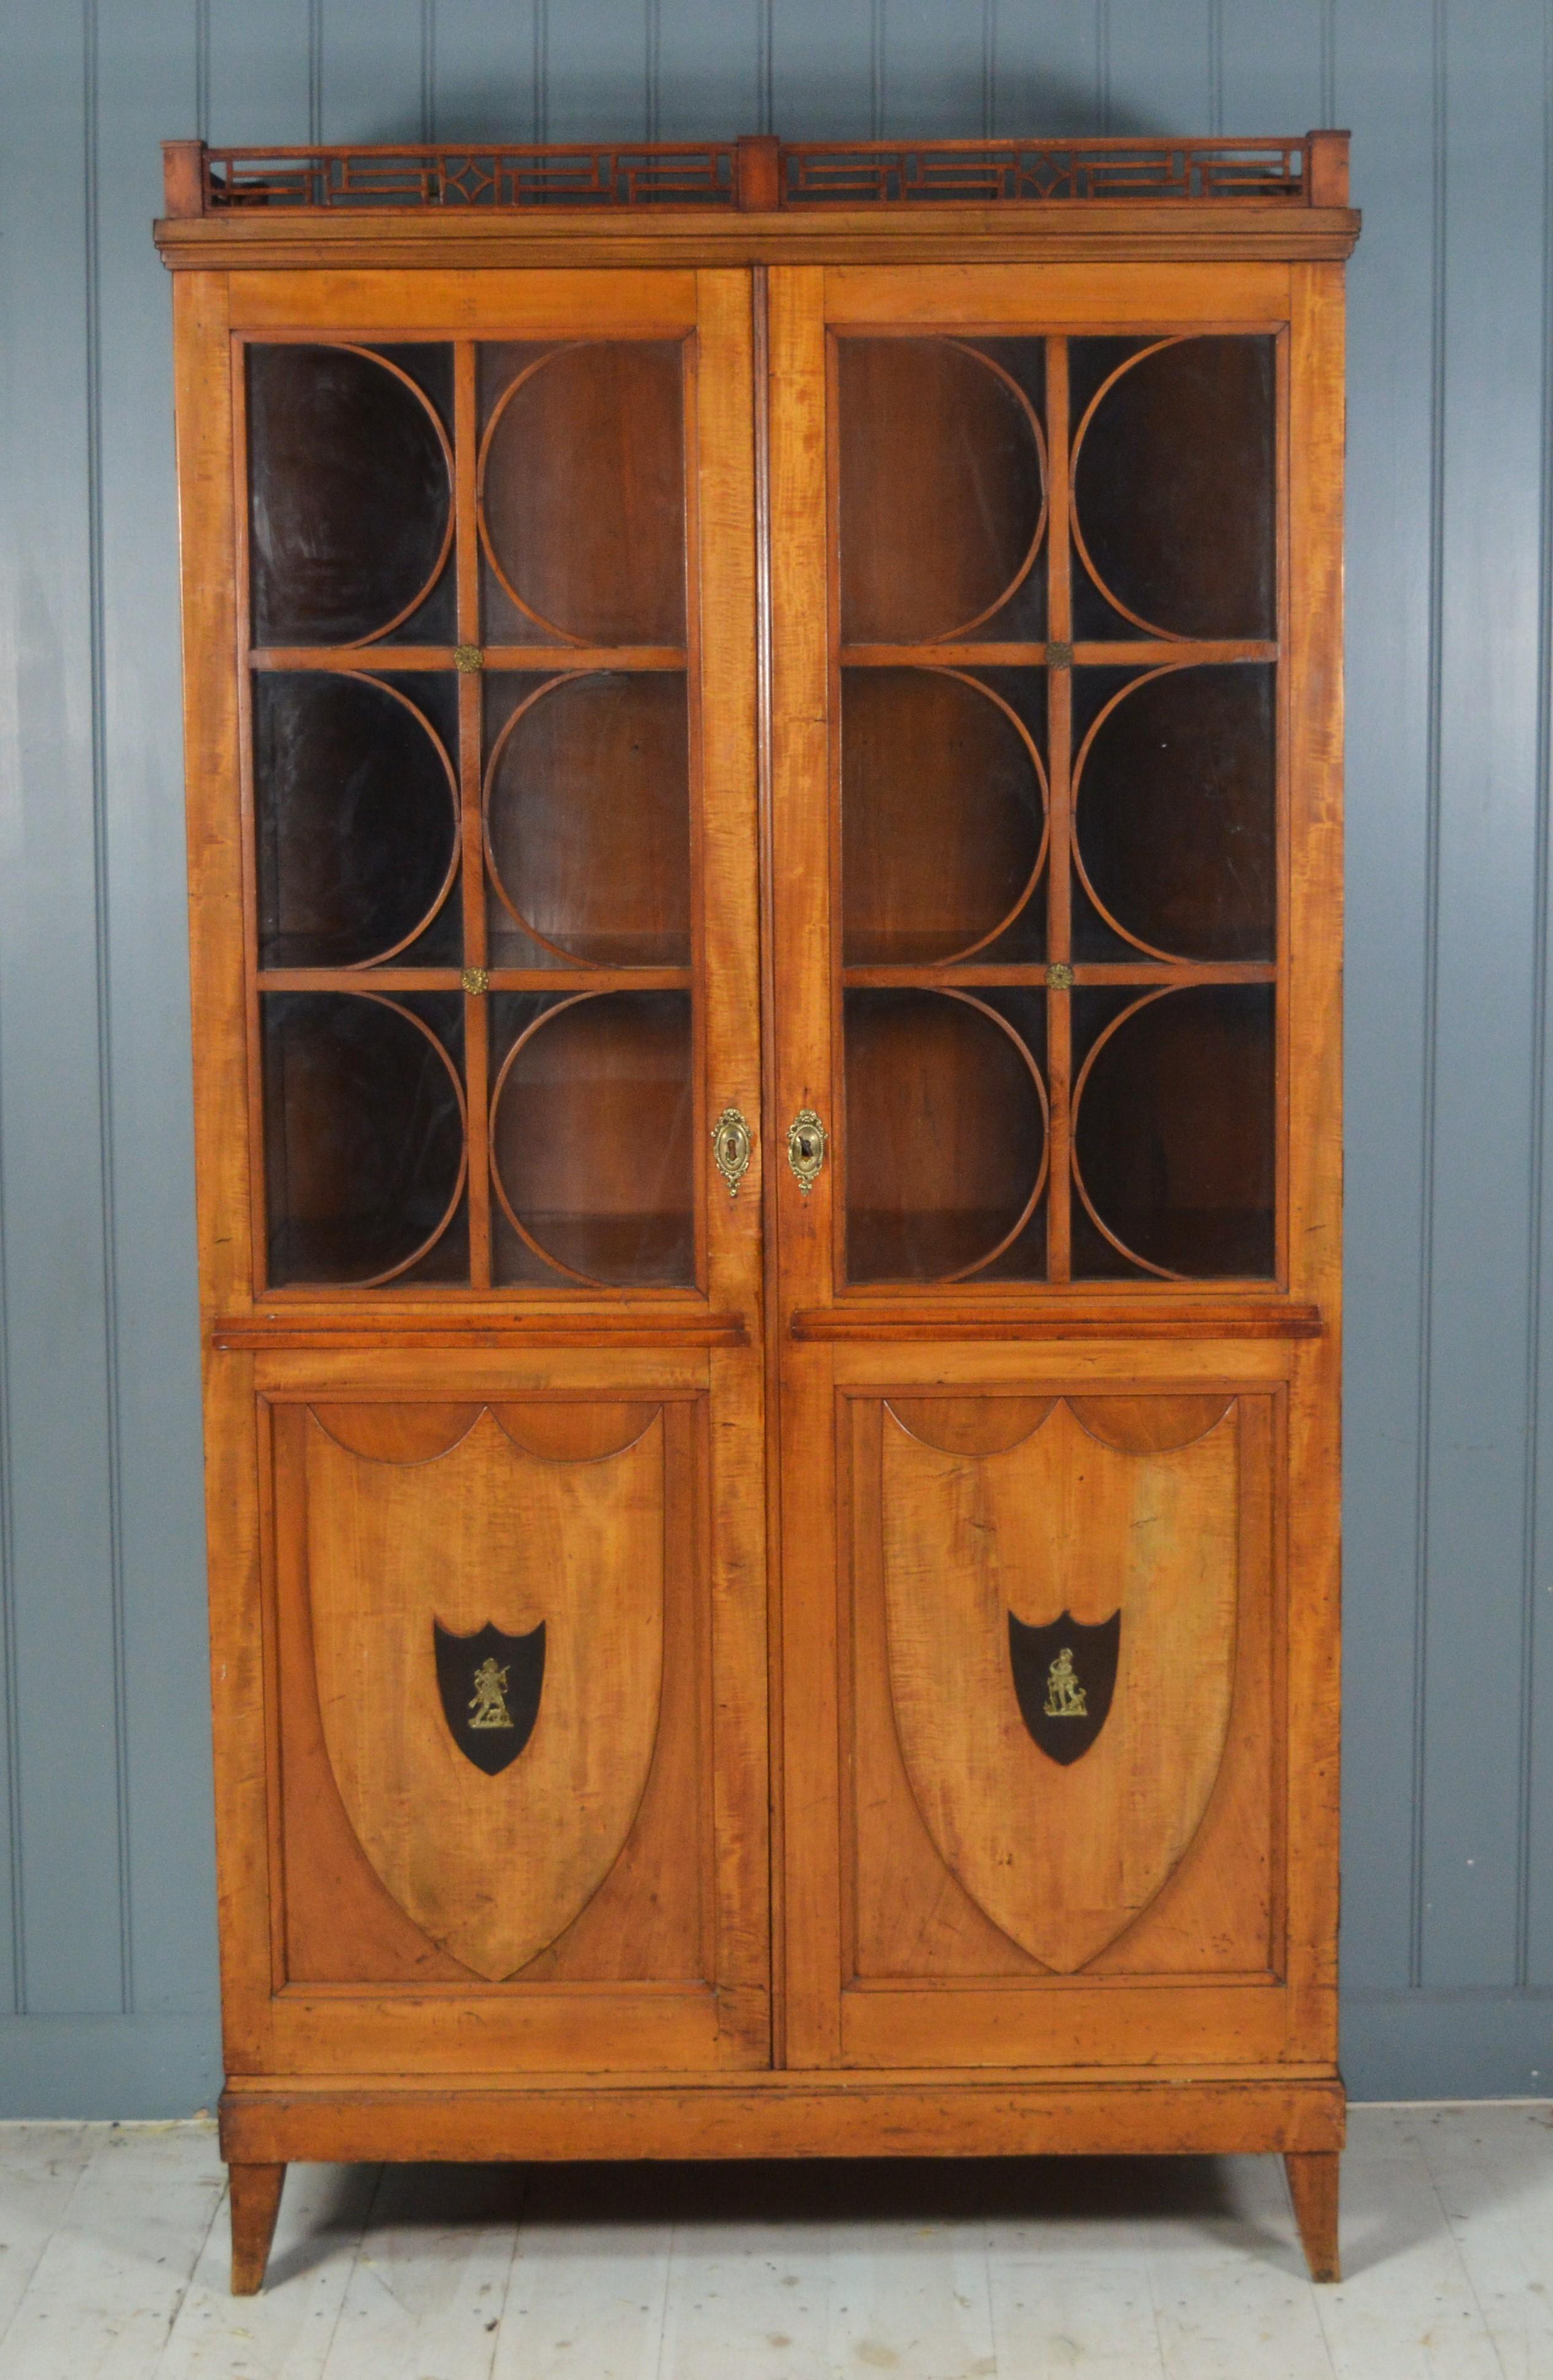  Superbe vitrine en bois de satin dans le style Biedermeier avec des panneaux de bouclier sur la caisse inférieure. Il comporte 2 tiroirs à l'intérieur en pitch pin avec des poignées en anneau, la carcasse est en pin de bonne qualité, probablement